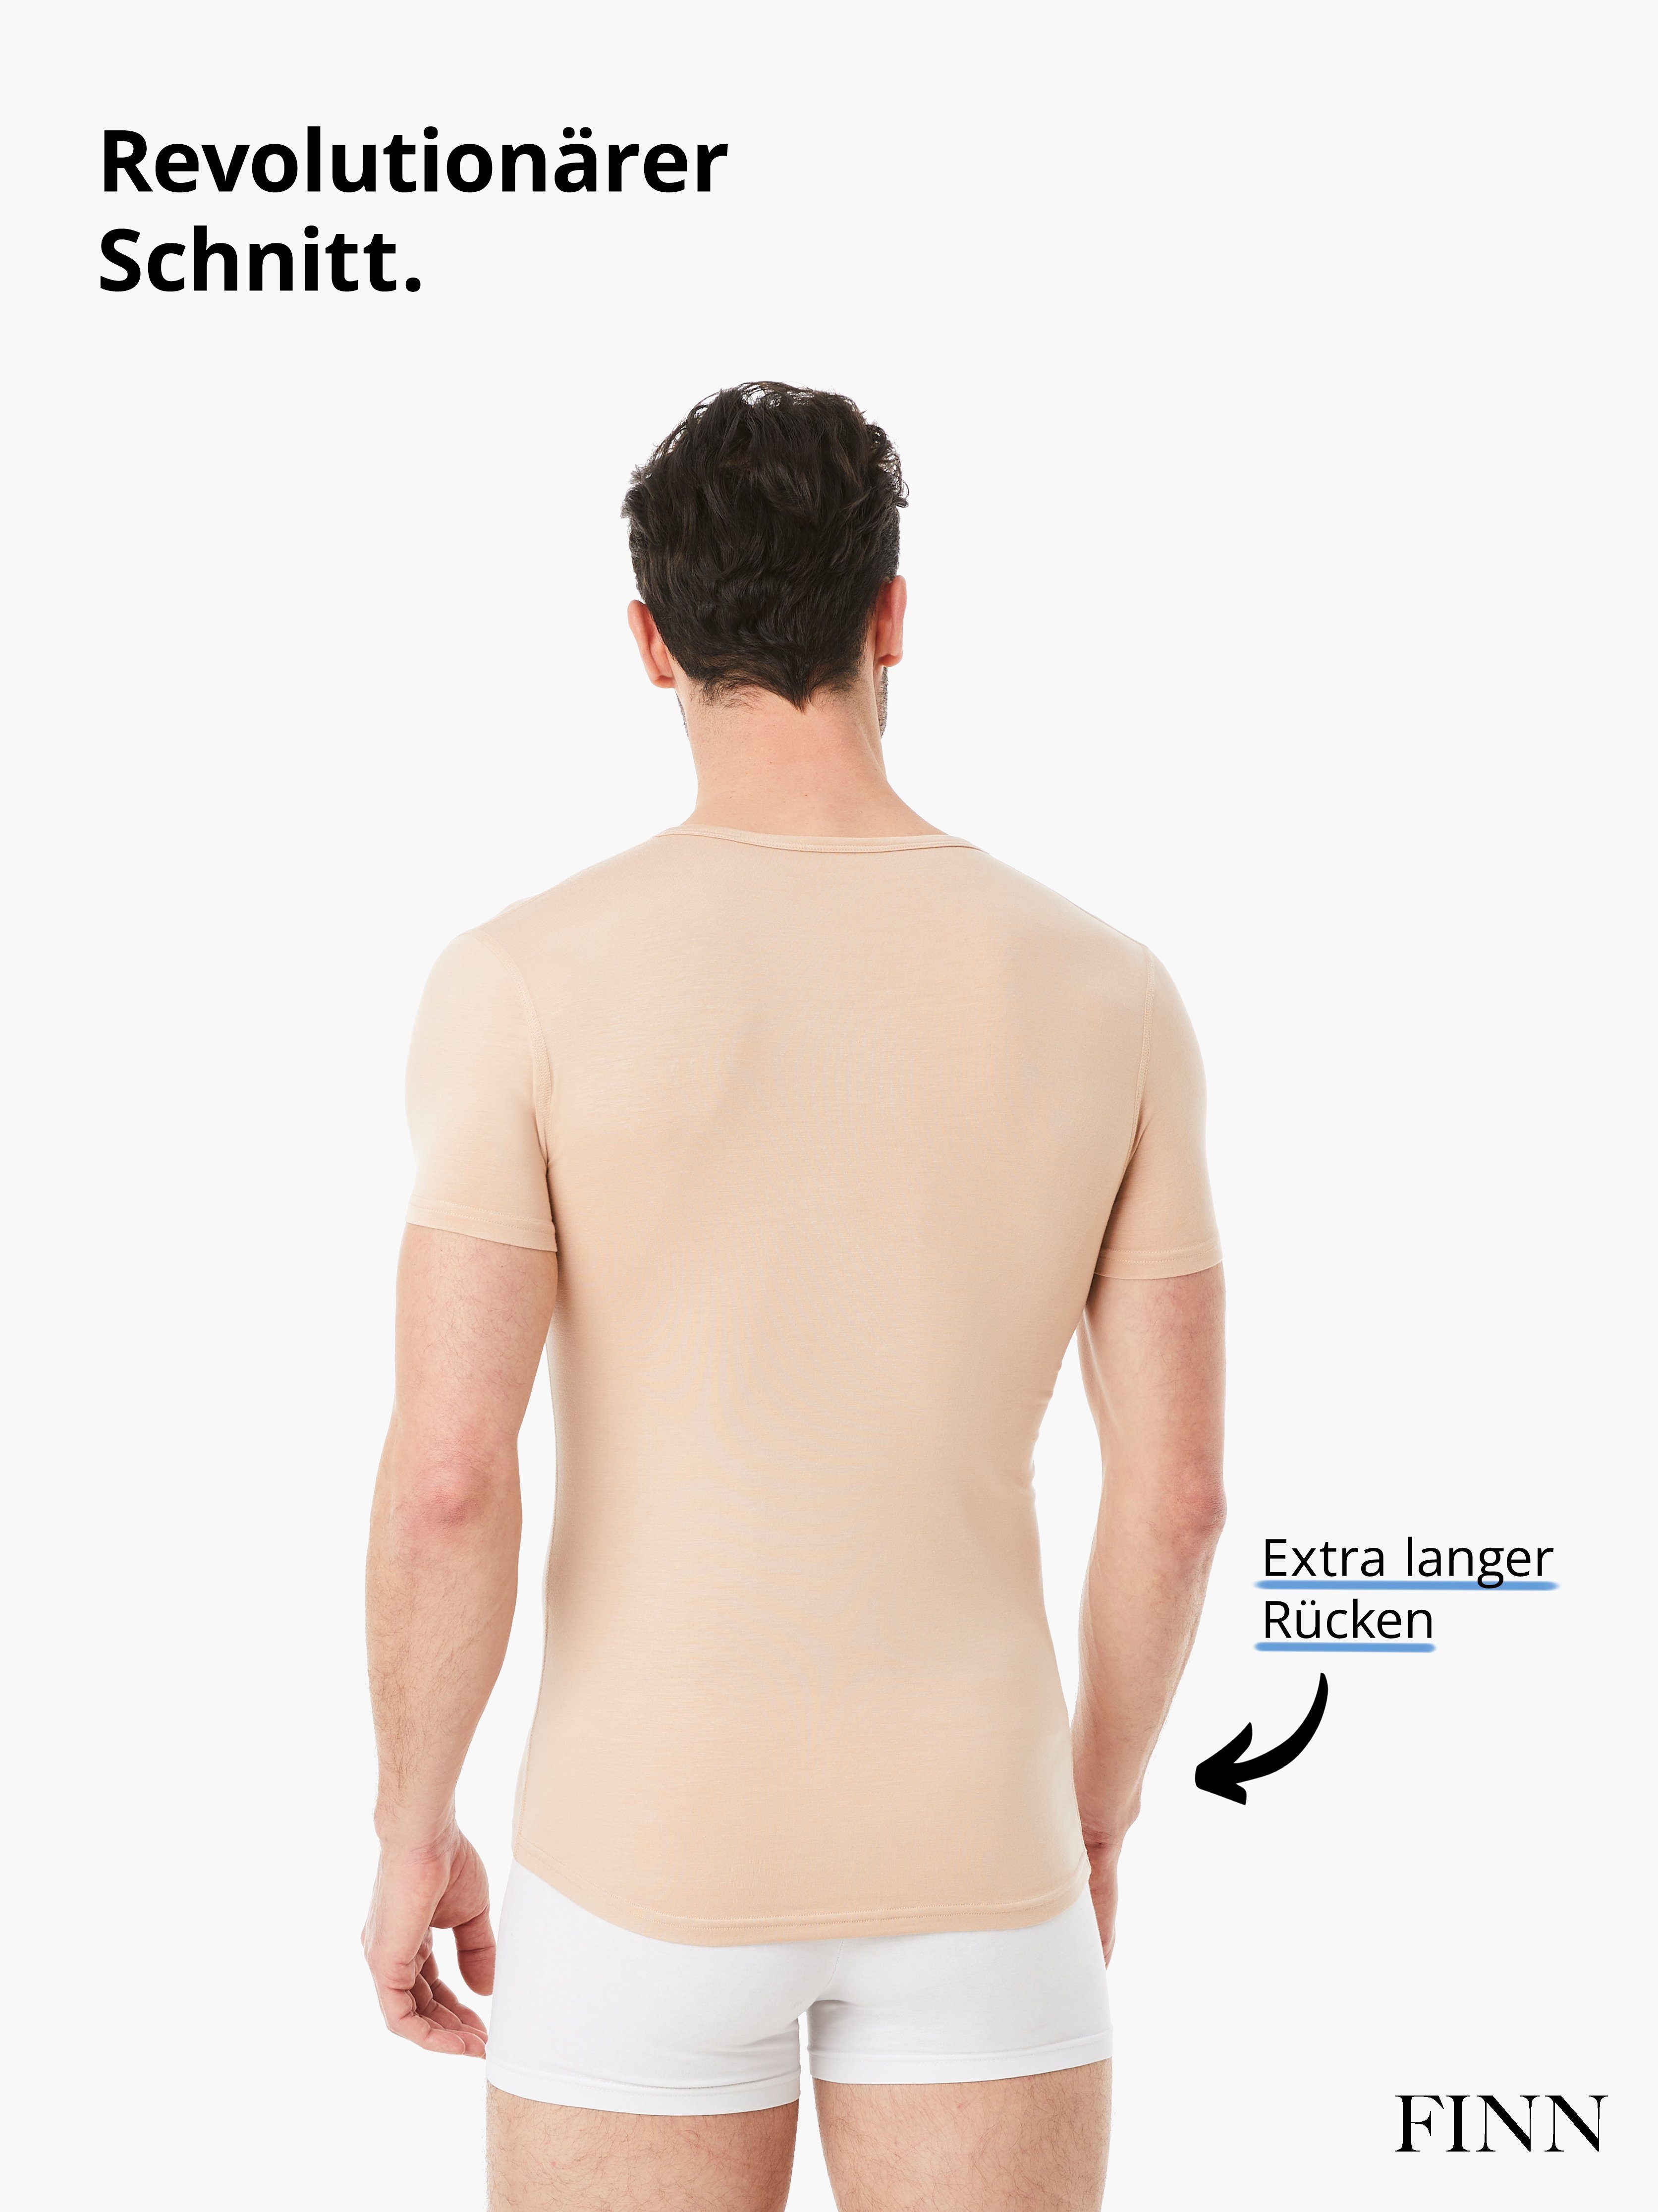 Design Unterhemd Tragekomfort FINN feiner Light-Beige Herren maximaler Micro-Modal Unterhemd Stoff, Business Kurzarm V-Ausschnitt